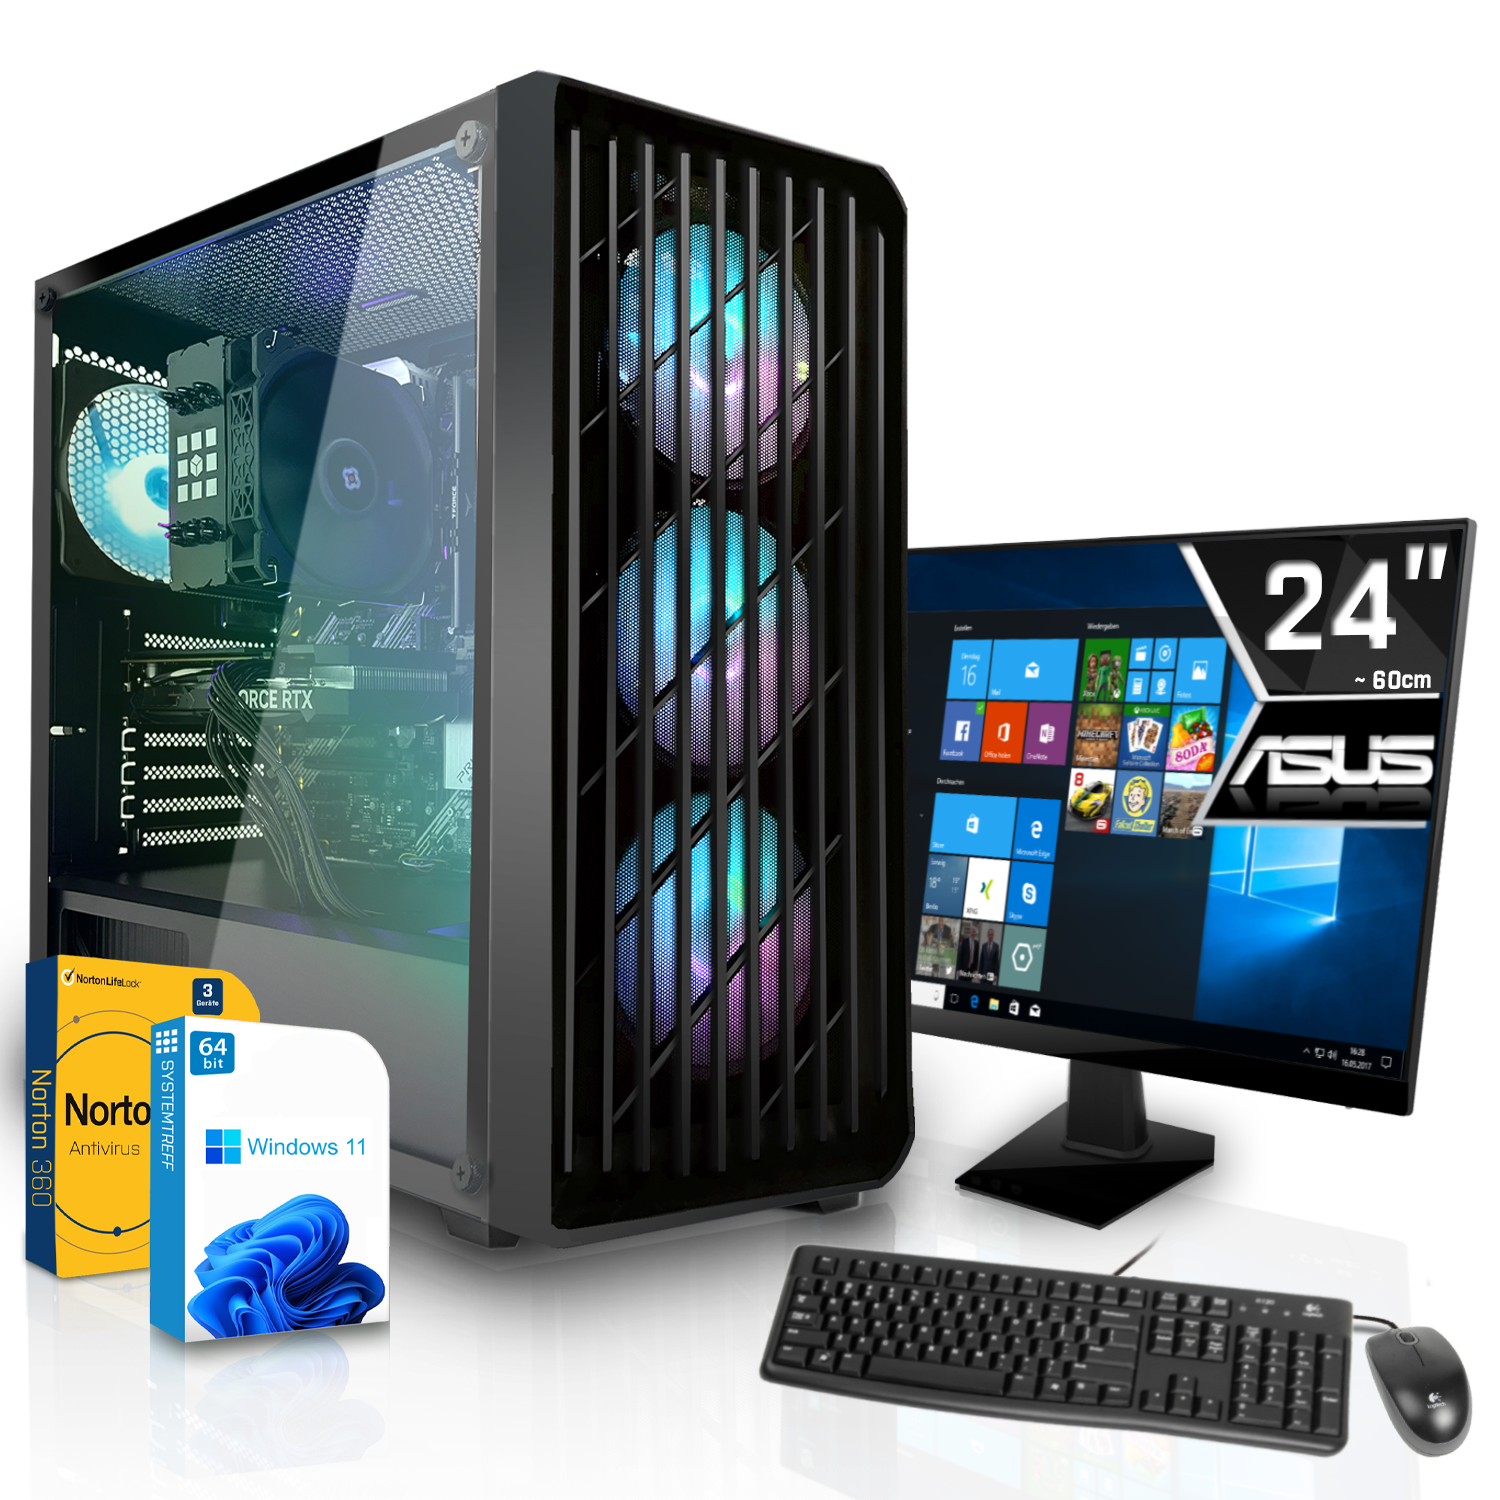 SYSTEMTREFF Gaming Komplett AMD mit Prozessor, AMD Komplett GB GB Ryzen 5500 5 8 8GB 5500, 16 RX Radeon RAM, mSSD, 6600 GDDR6, GB 512 PC